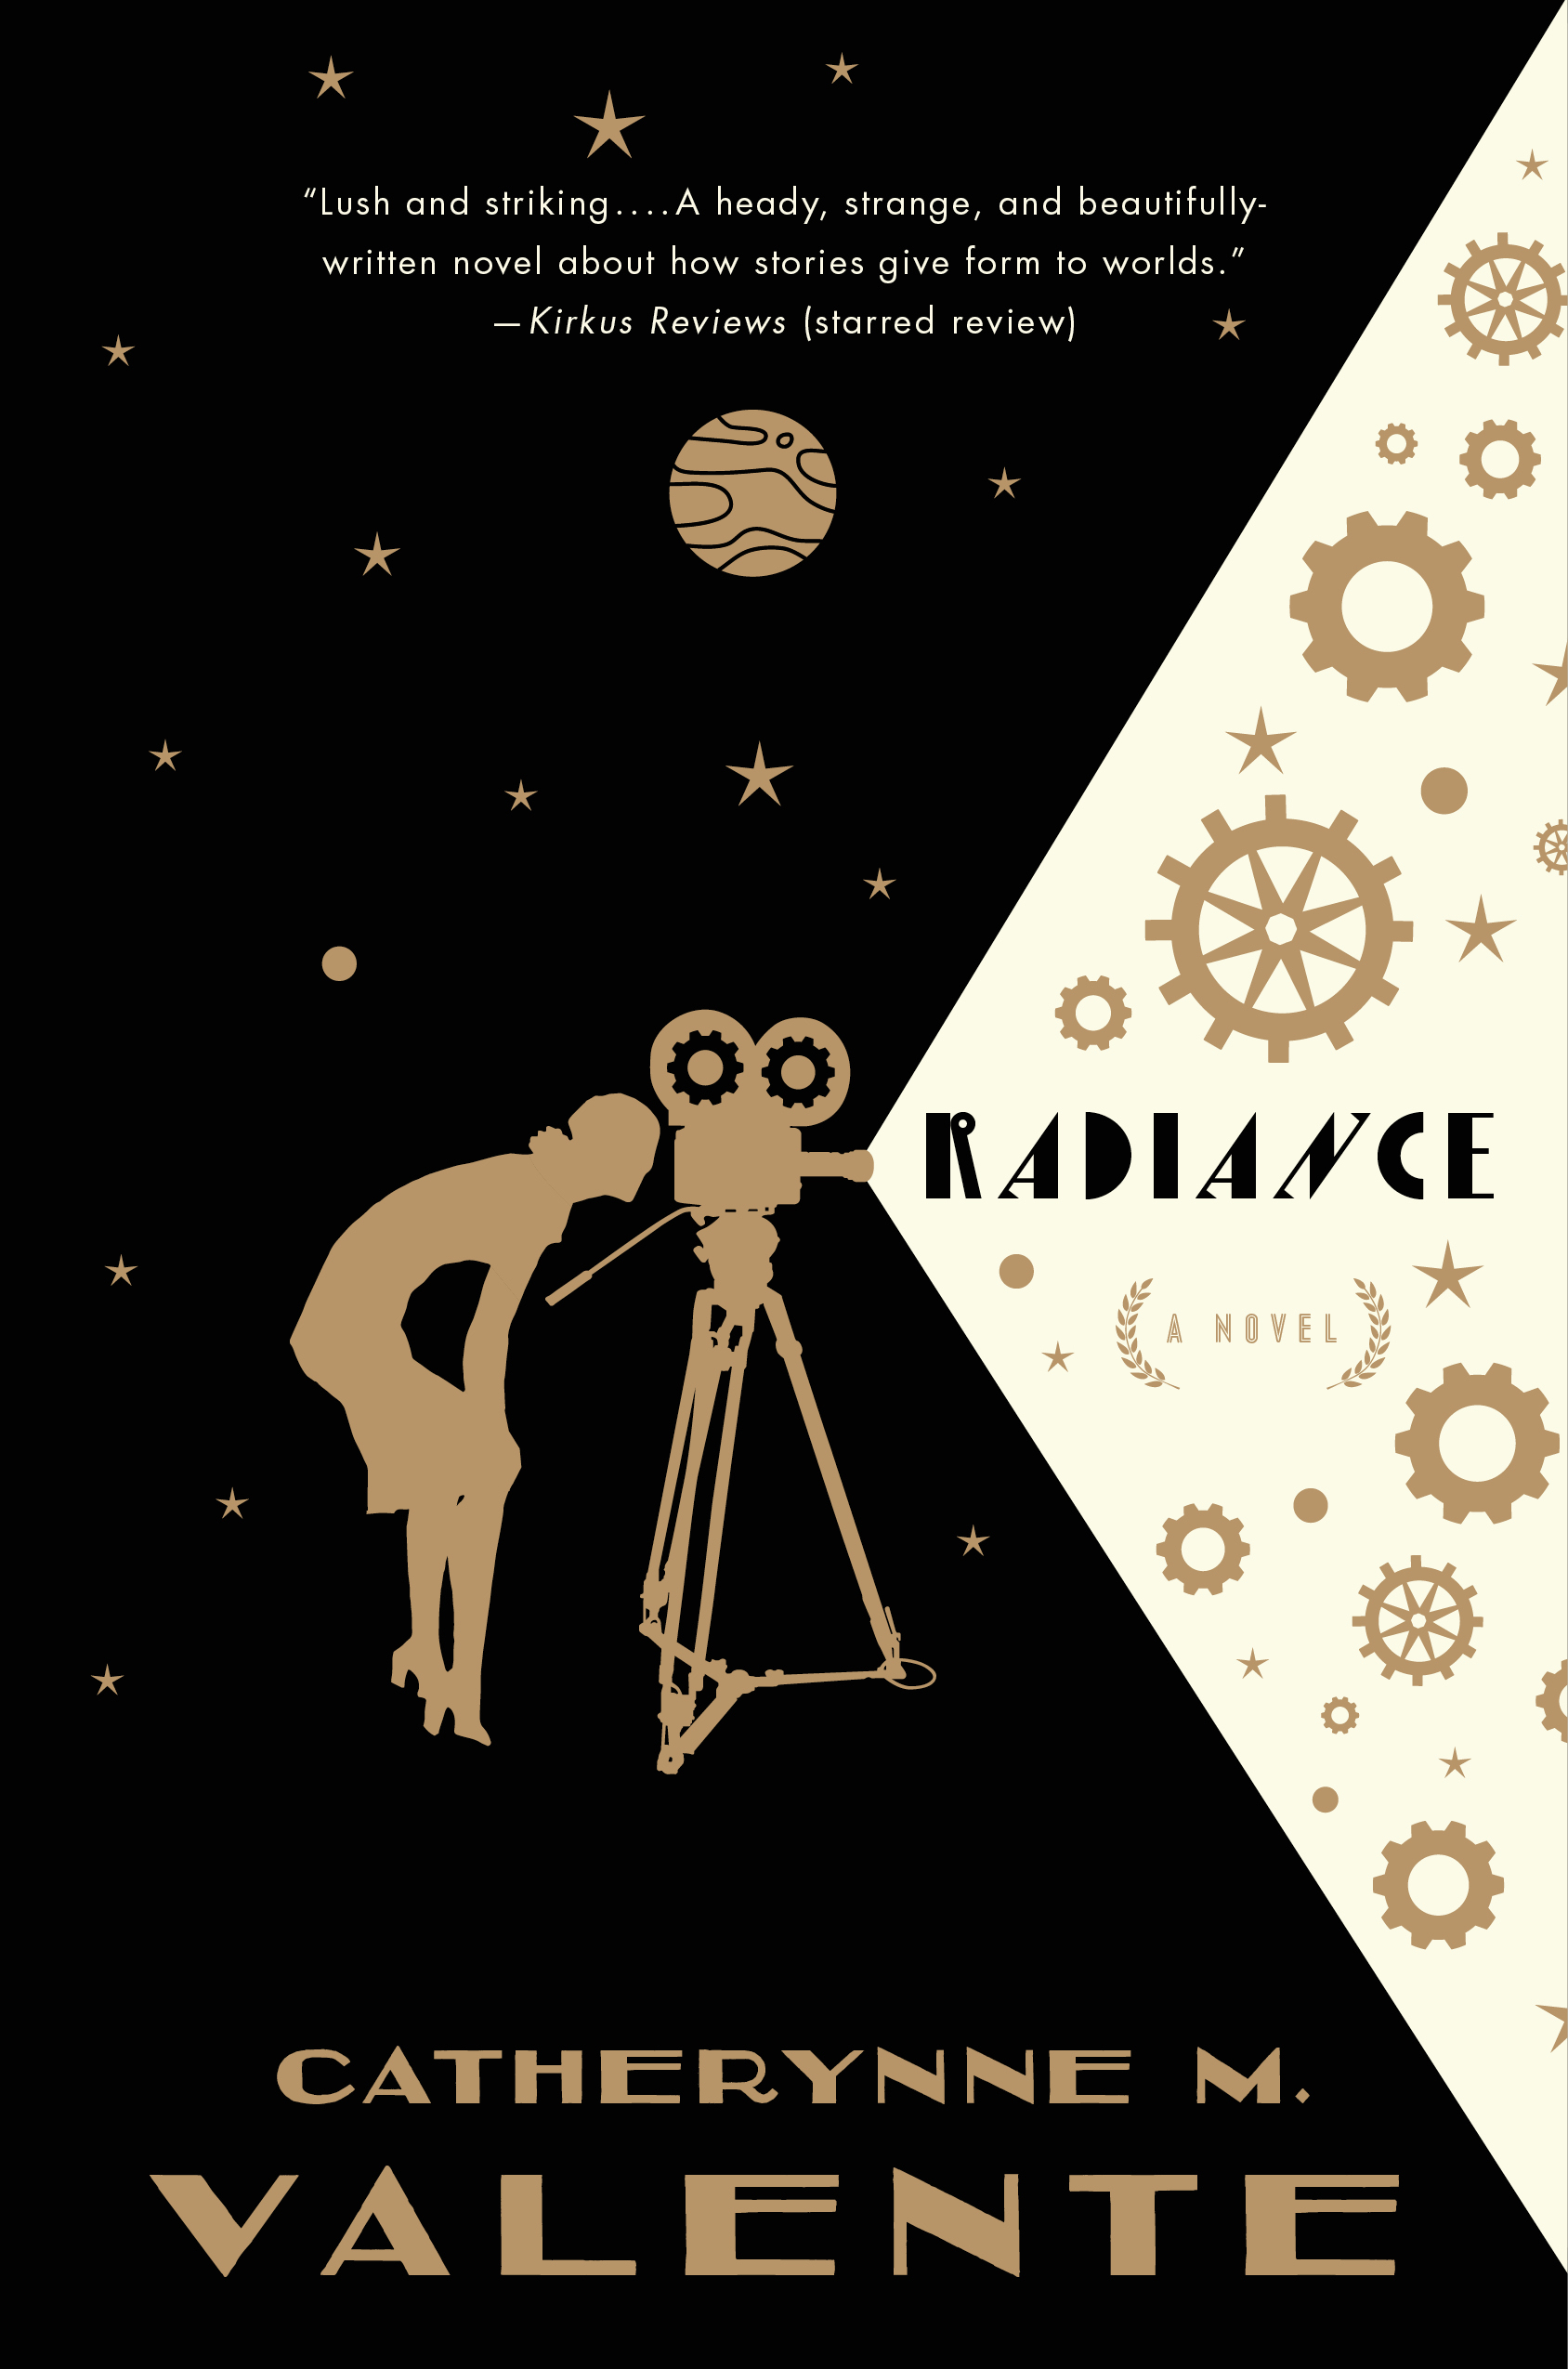 Radiance : A Novel by Catherynne M. Valente